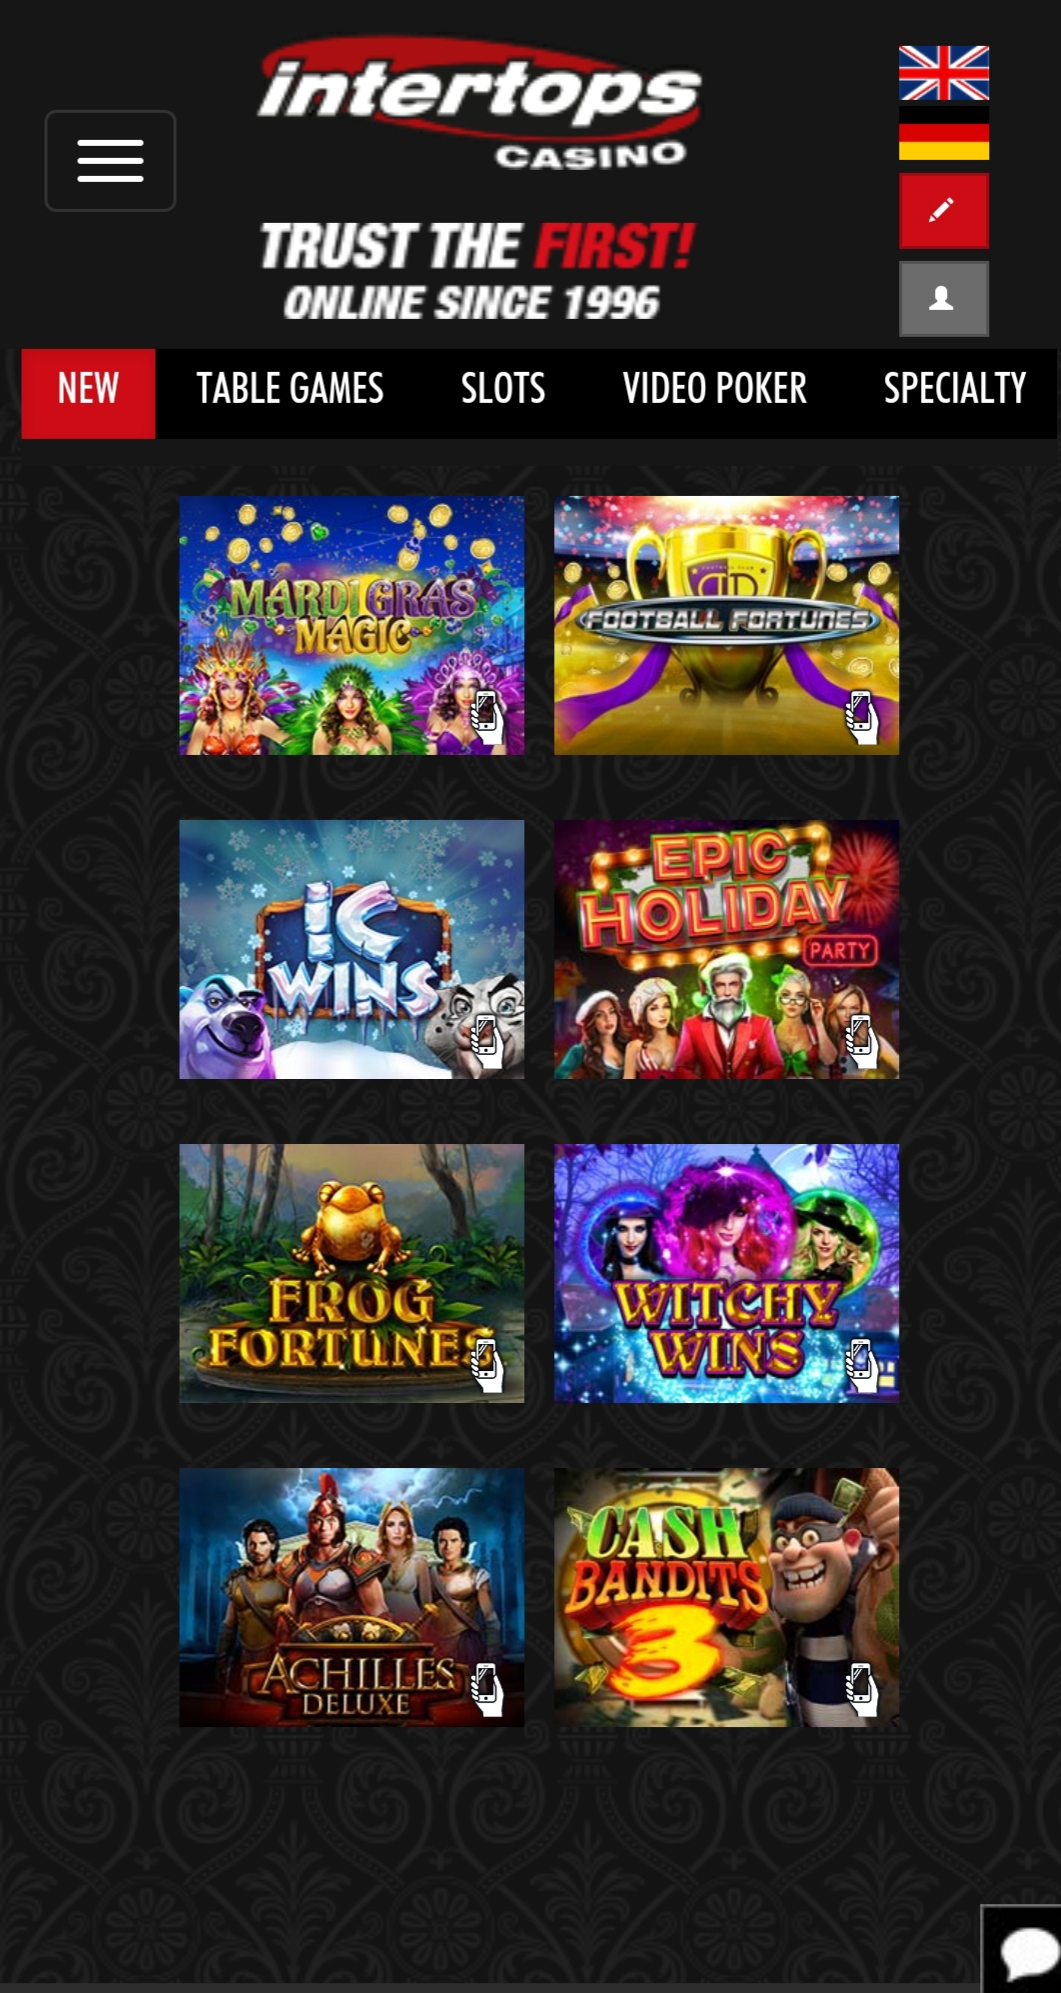 Intertops Casino Mobile Games Review